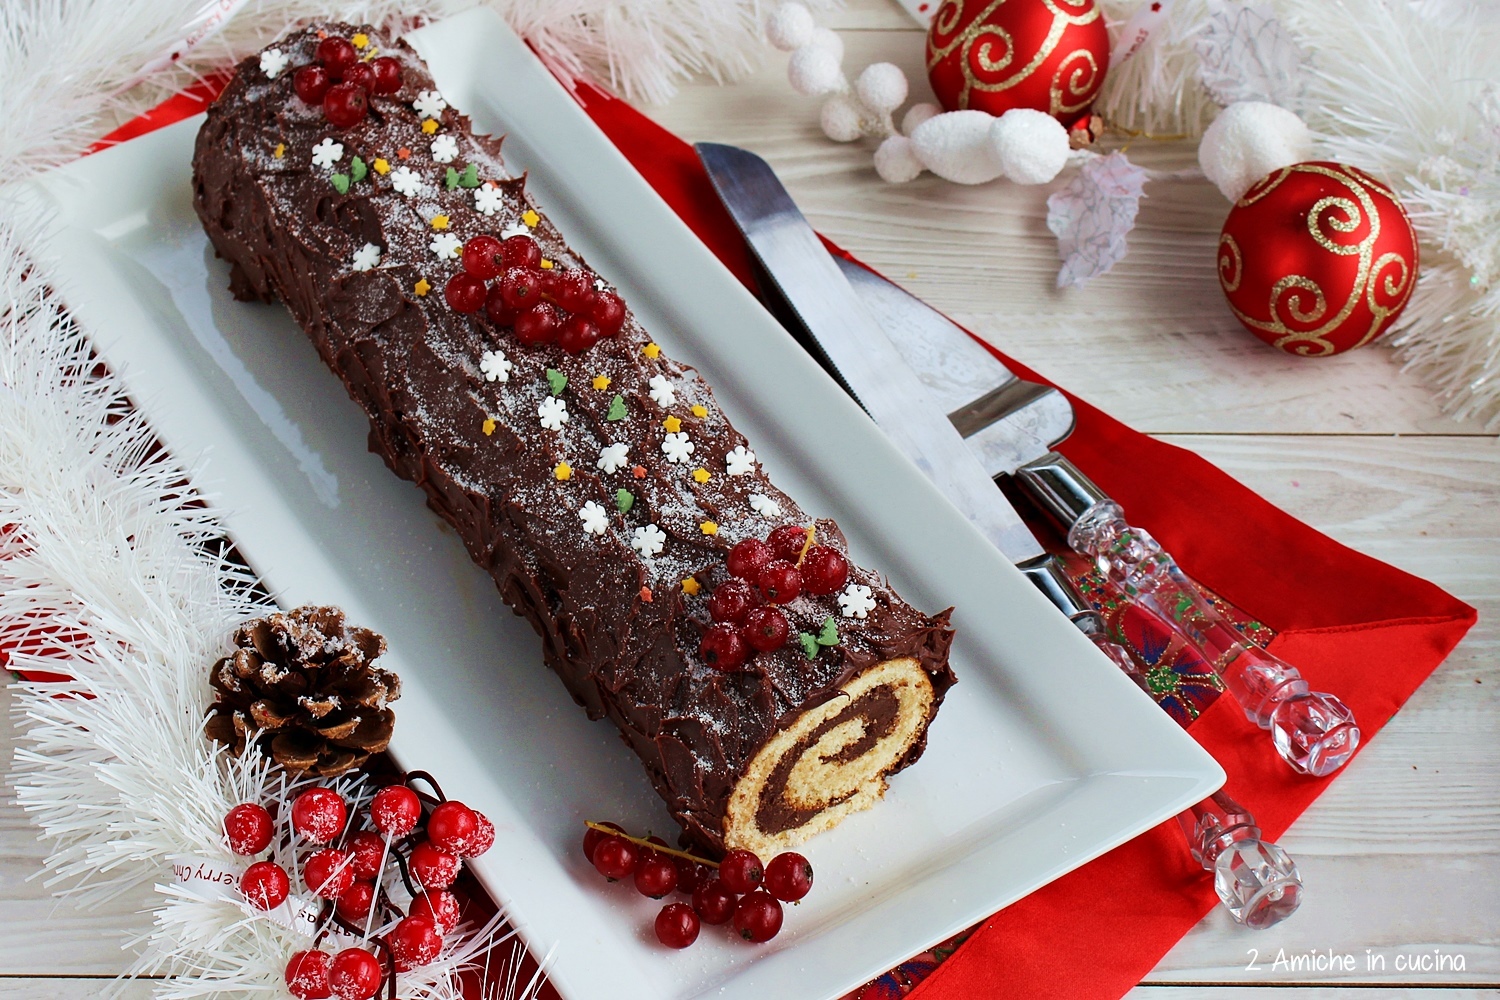 Ricetta Del Tronchetto Di Natale.Tronchetto Al Cioccolato Buche De Noel 2 Amiche In Cucina